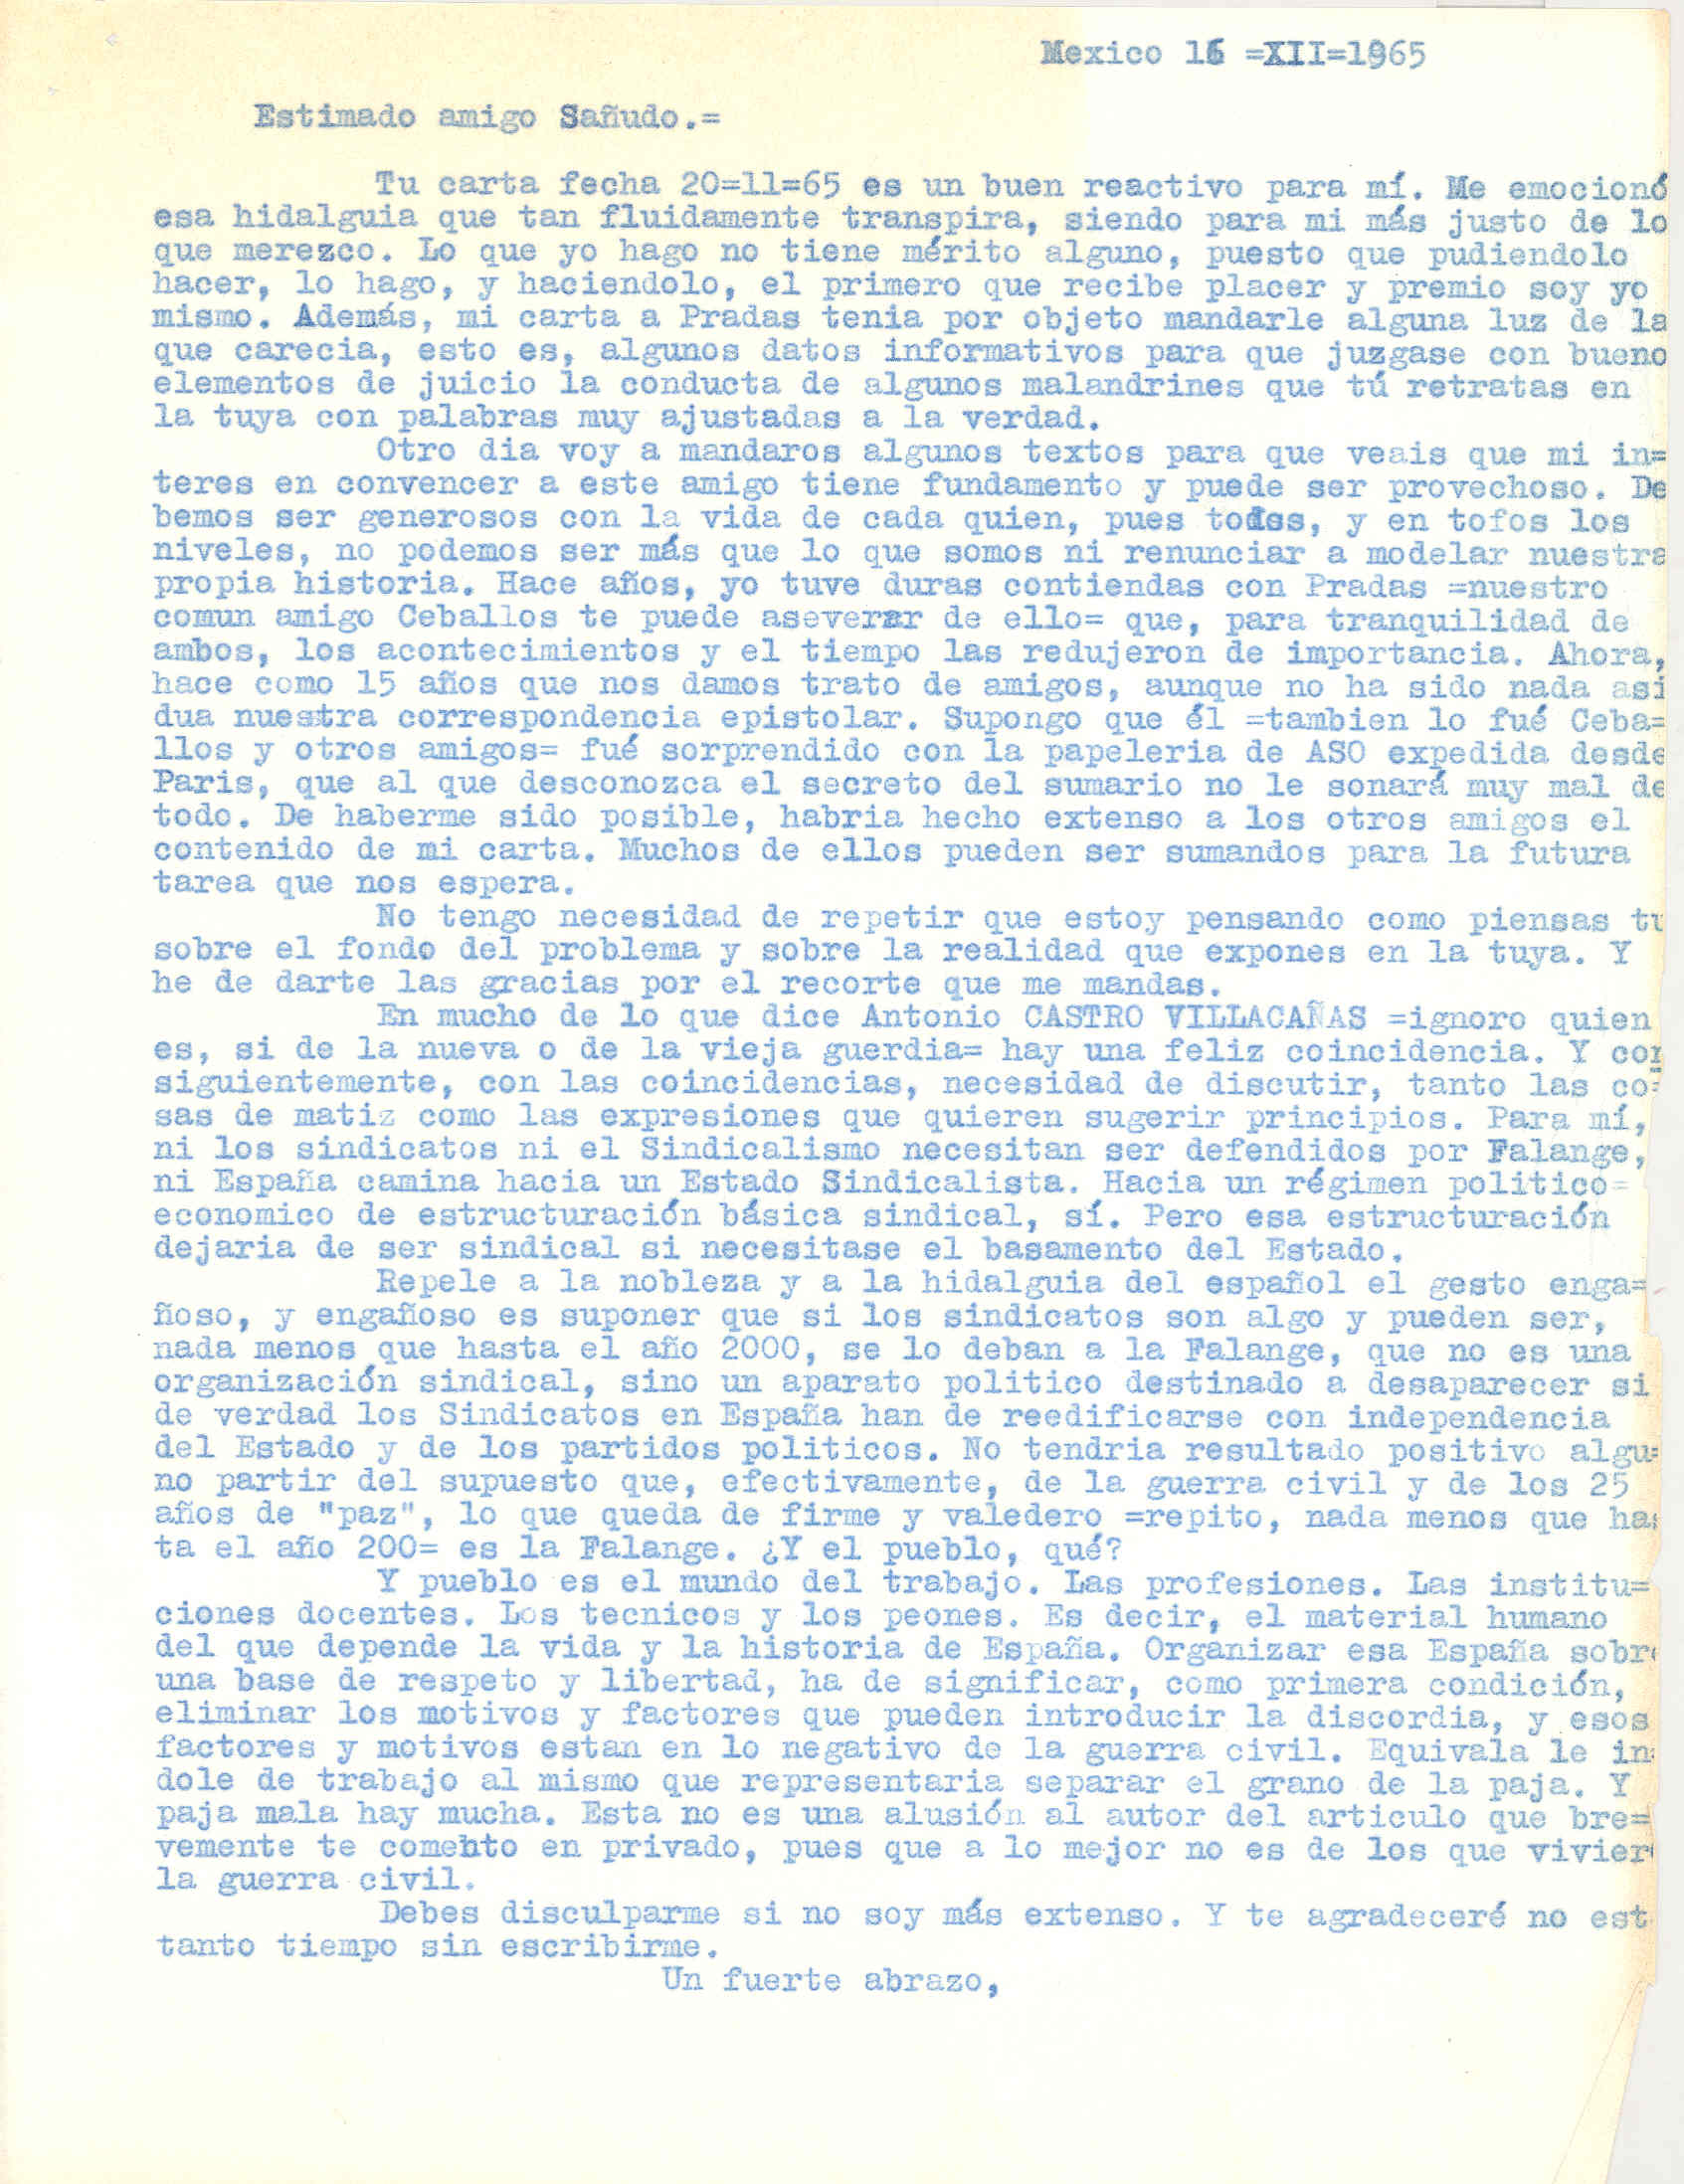 Carta a Fulgencio Sañudo en la que habla de su relación con Pradas y critica el texto de los falangistas que le adjuntó en la carta anterior.